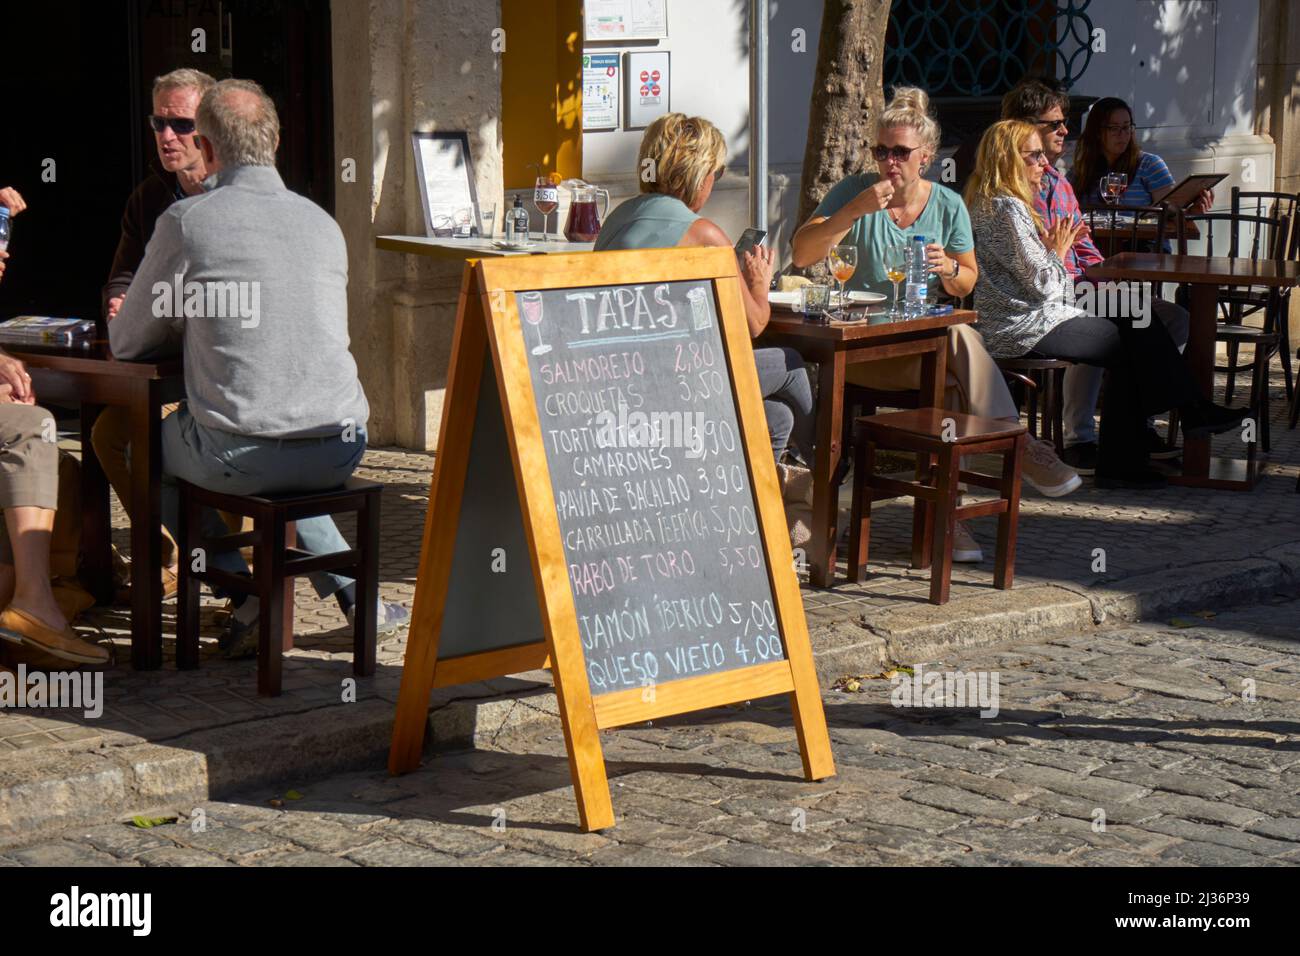 Bar à tapas en plein air au soleil avec des touristes et un grand menu de tapas, Séville, Espagne Banque D'Images